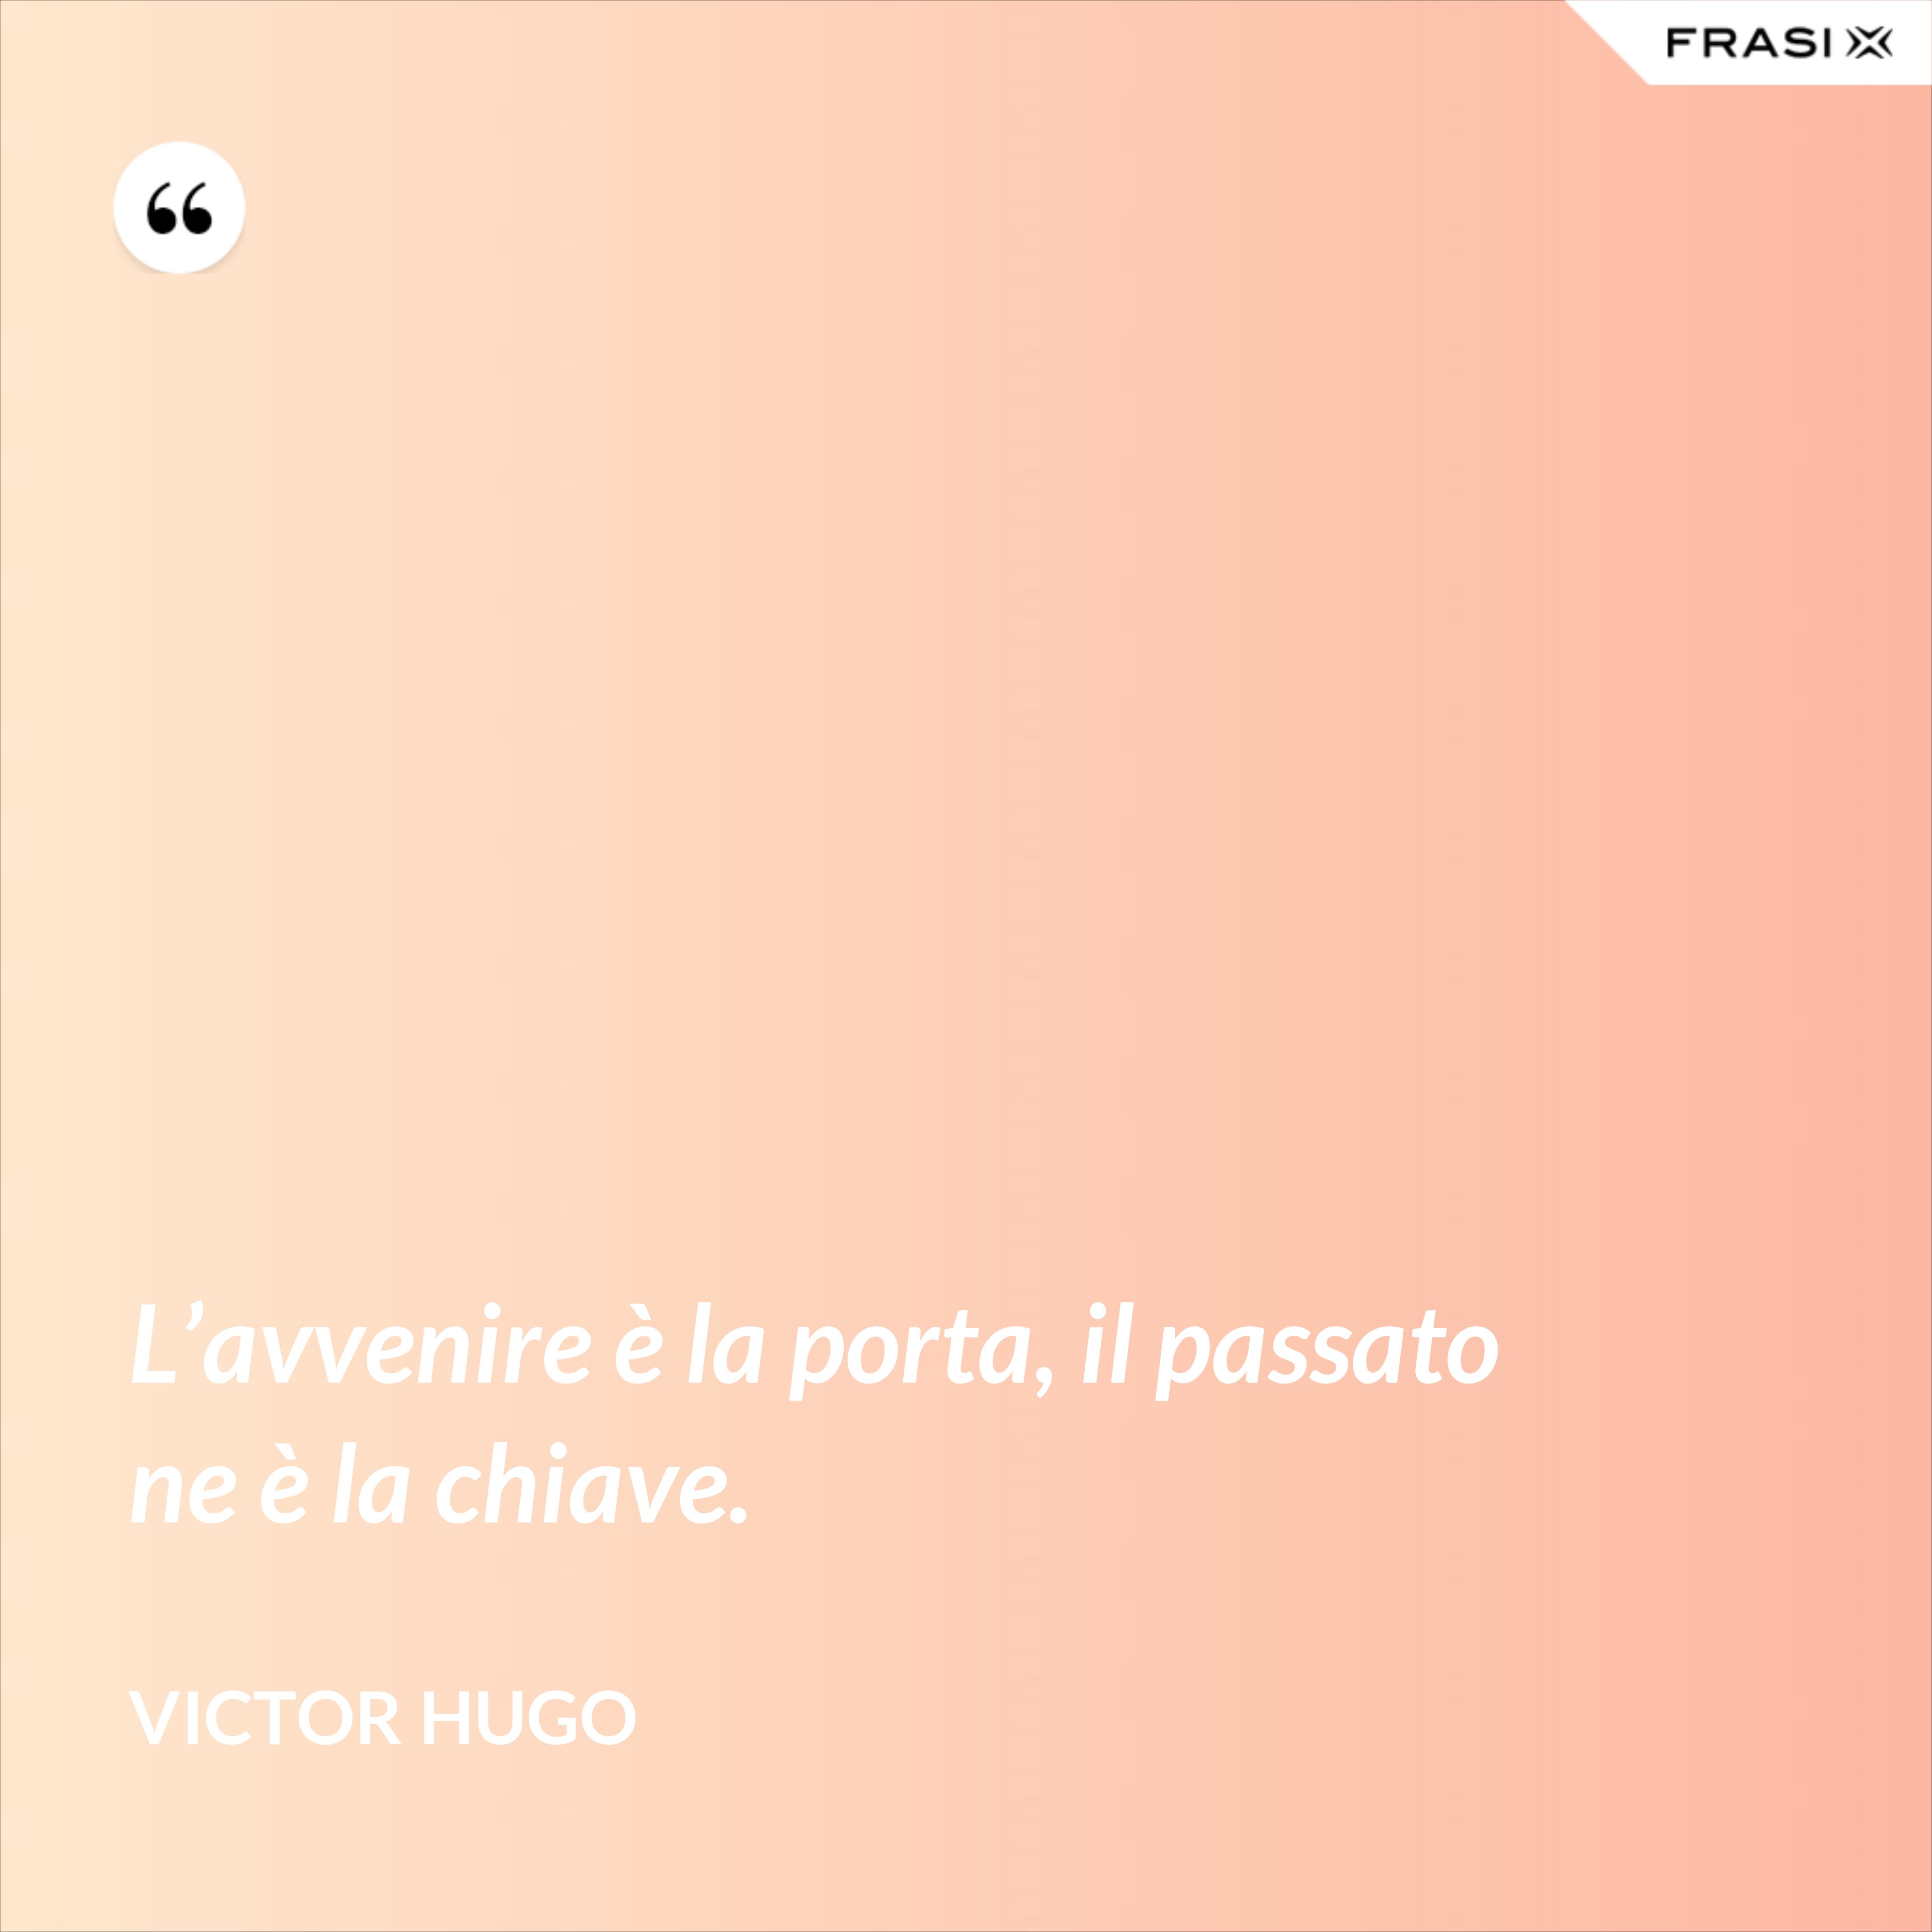 L’avvenire è la porta, il passato ne è la chiave. - Victor Hugo